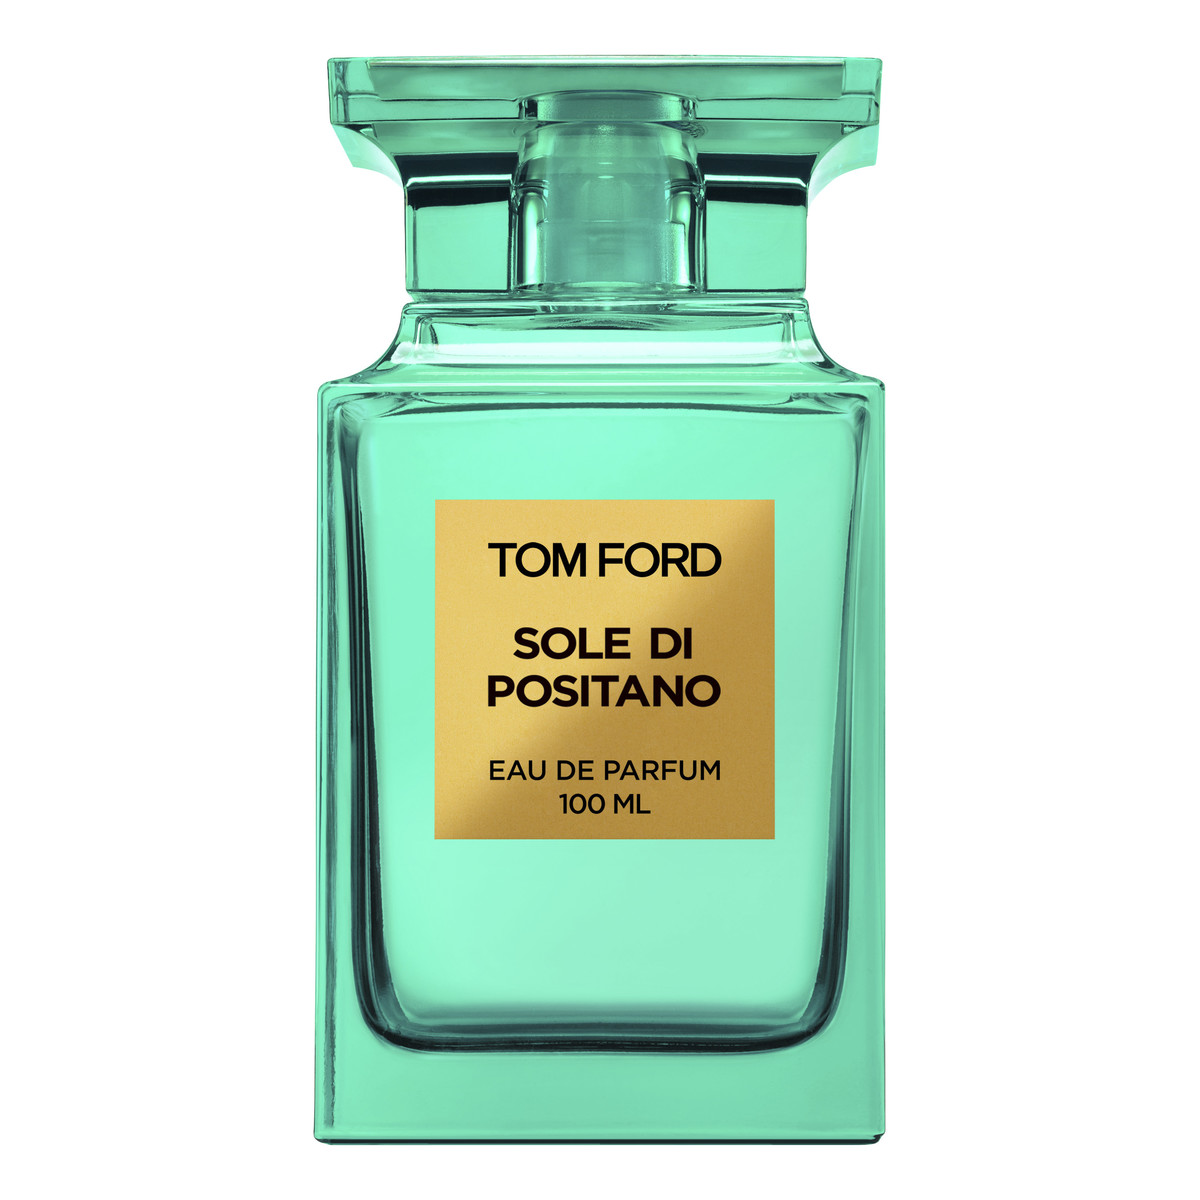 Tom Ford Sole Di Positano Woda perfumowana 100ml